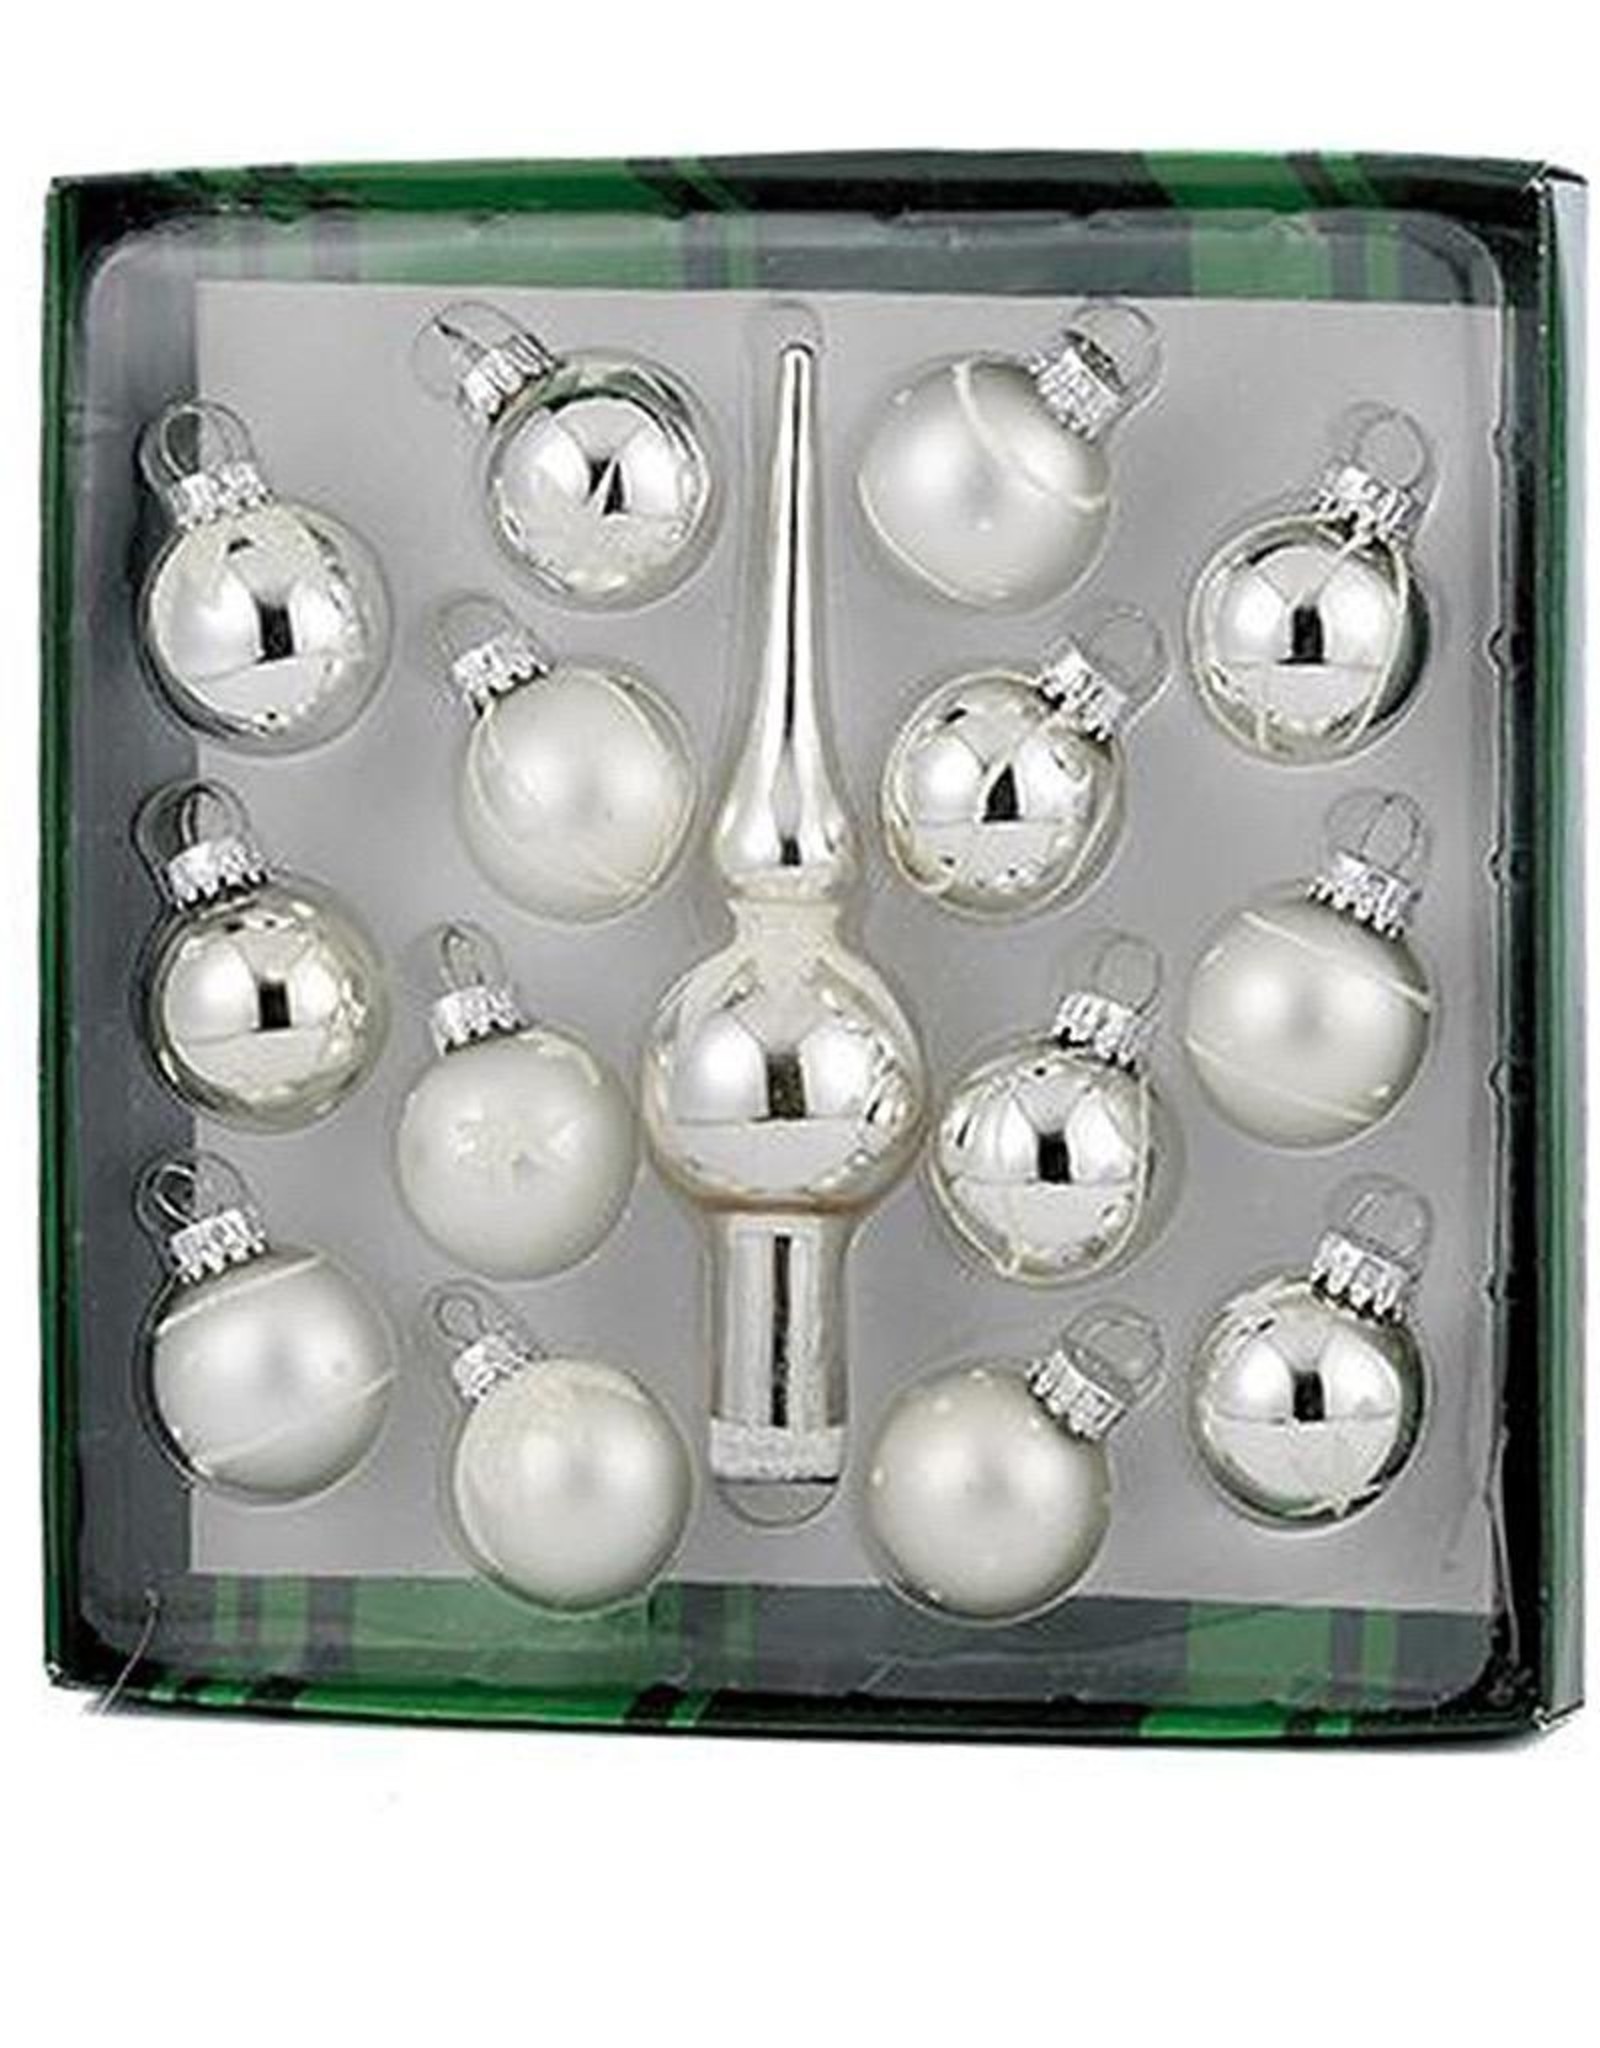 Kurt Adler Silver Miniature Glass Ball Ornaments W Tree Topper 15pc Set 35MM